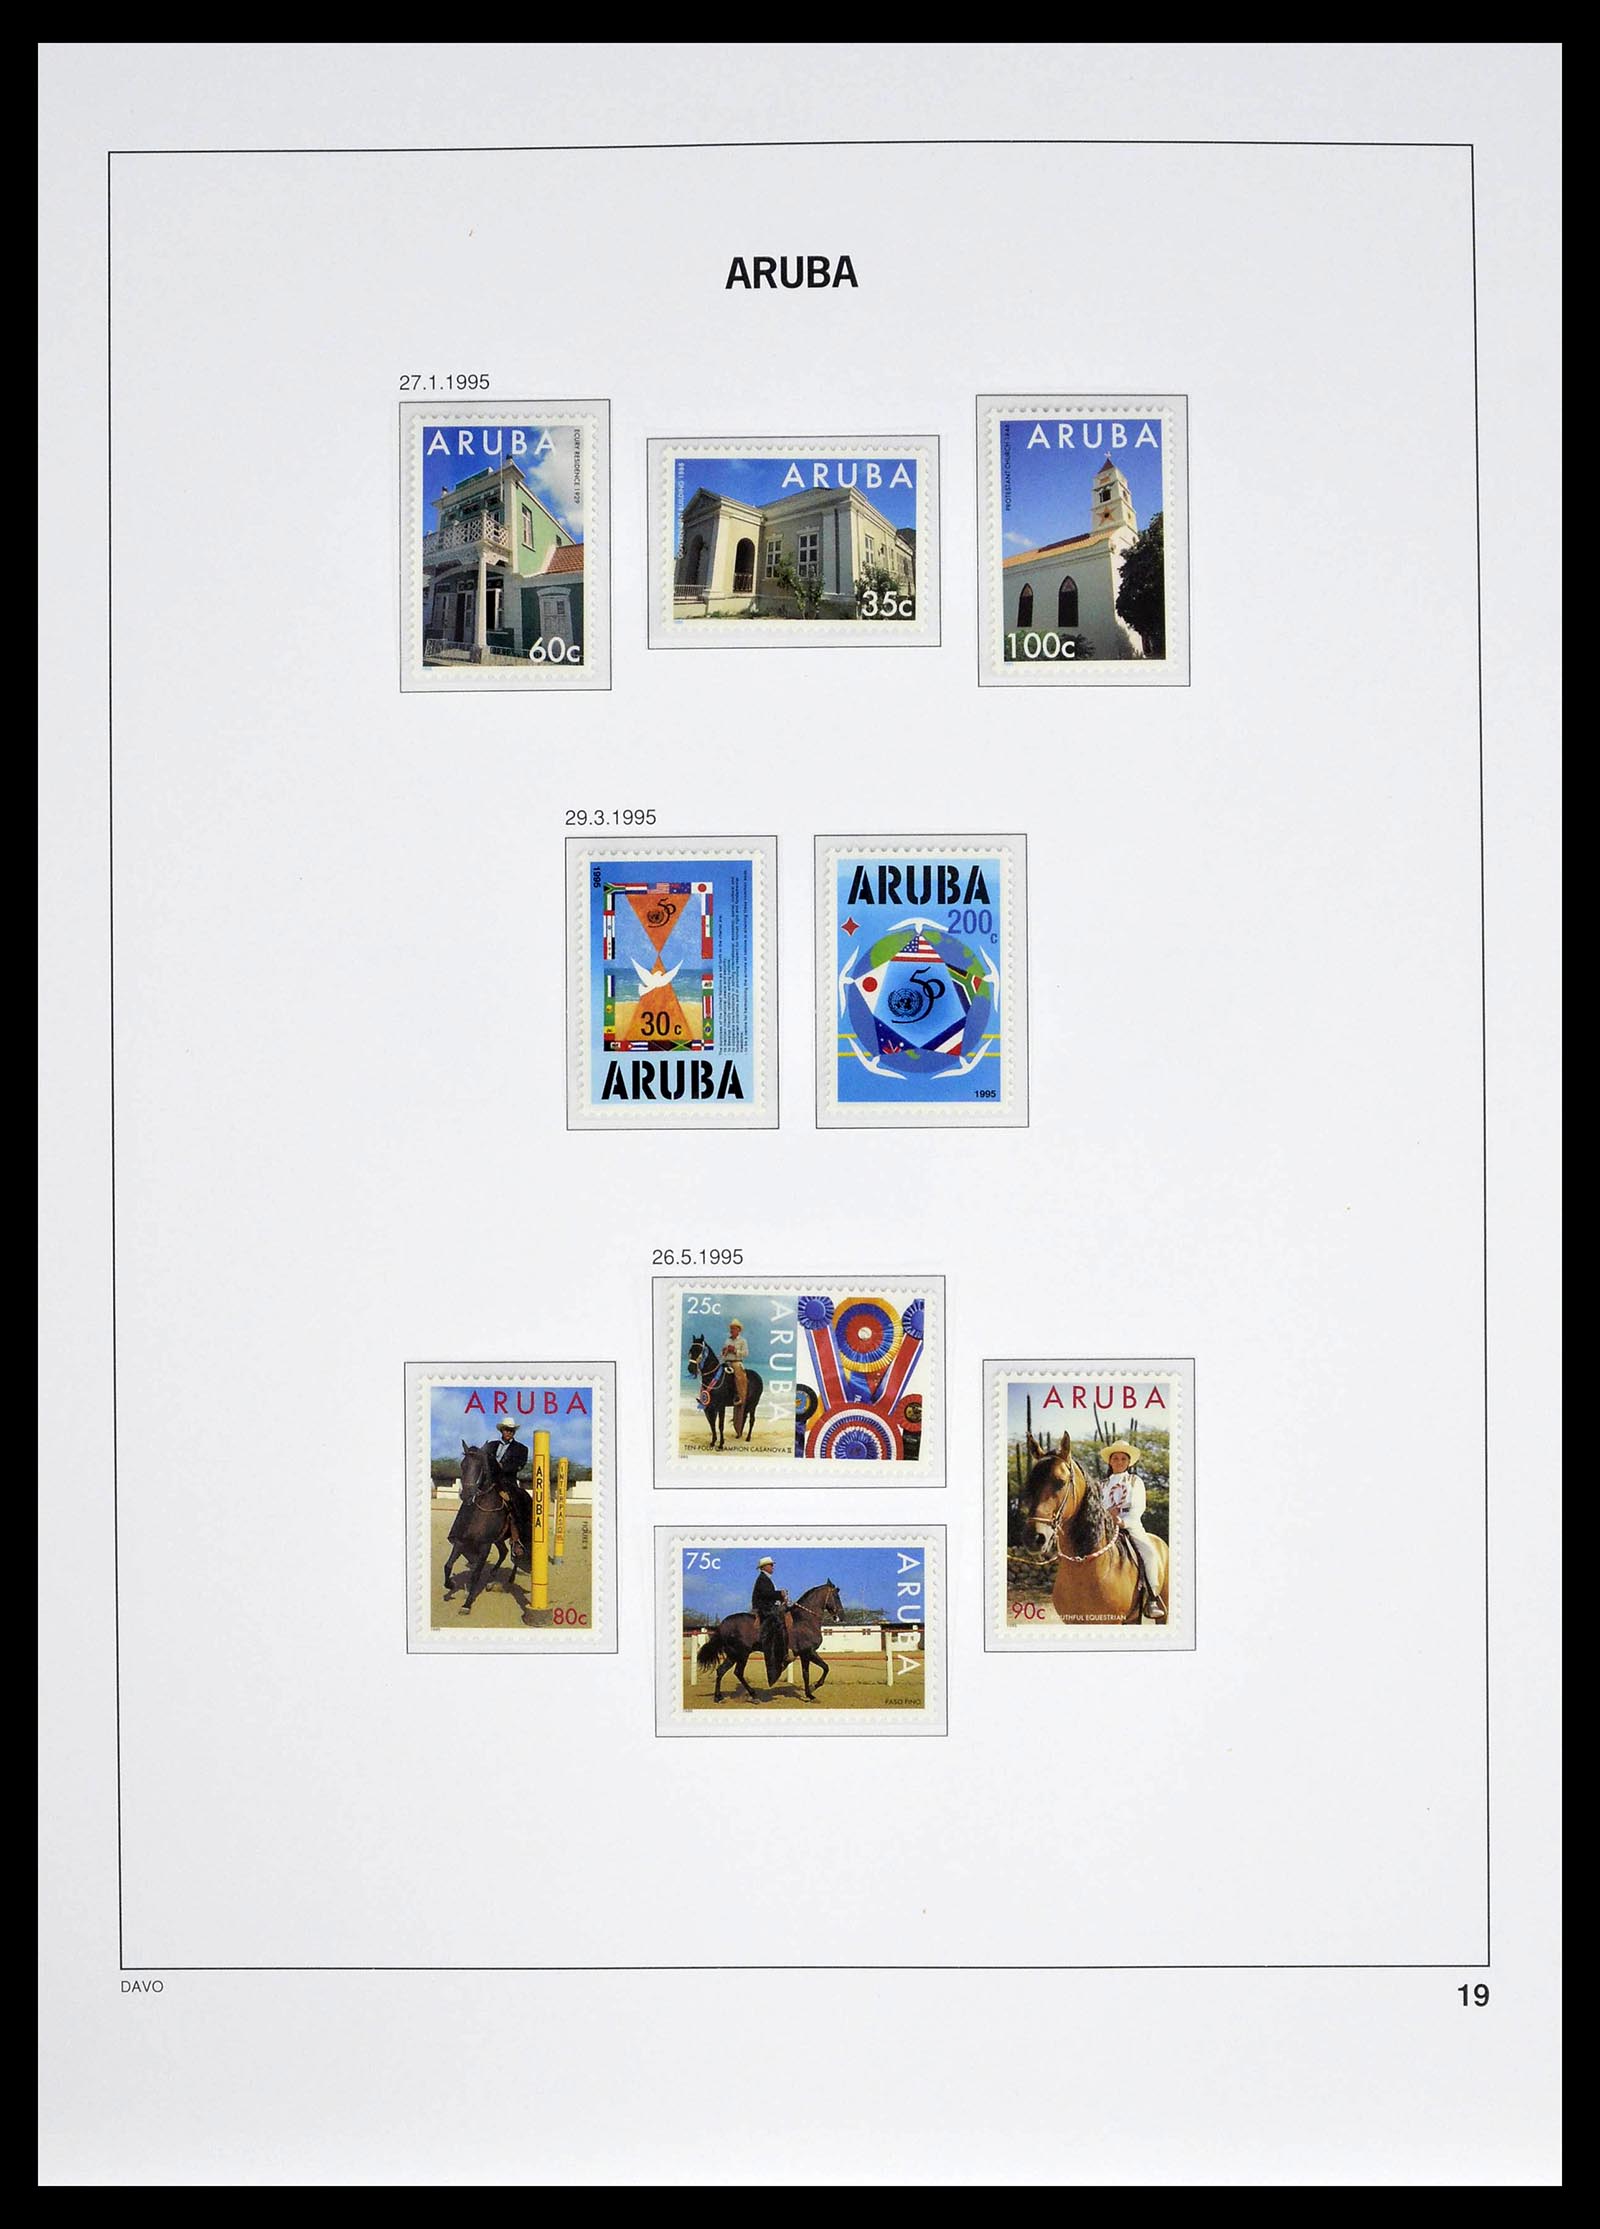 39361 0019 - Stamp collection 39361 Aruba 1986-2013.